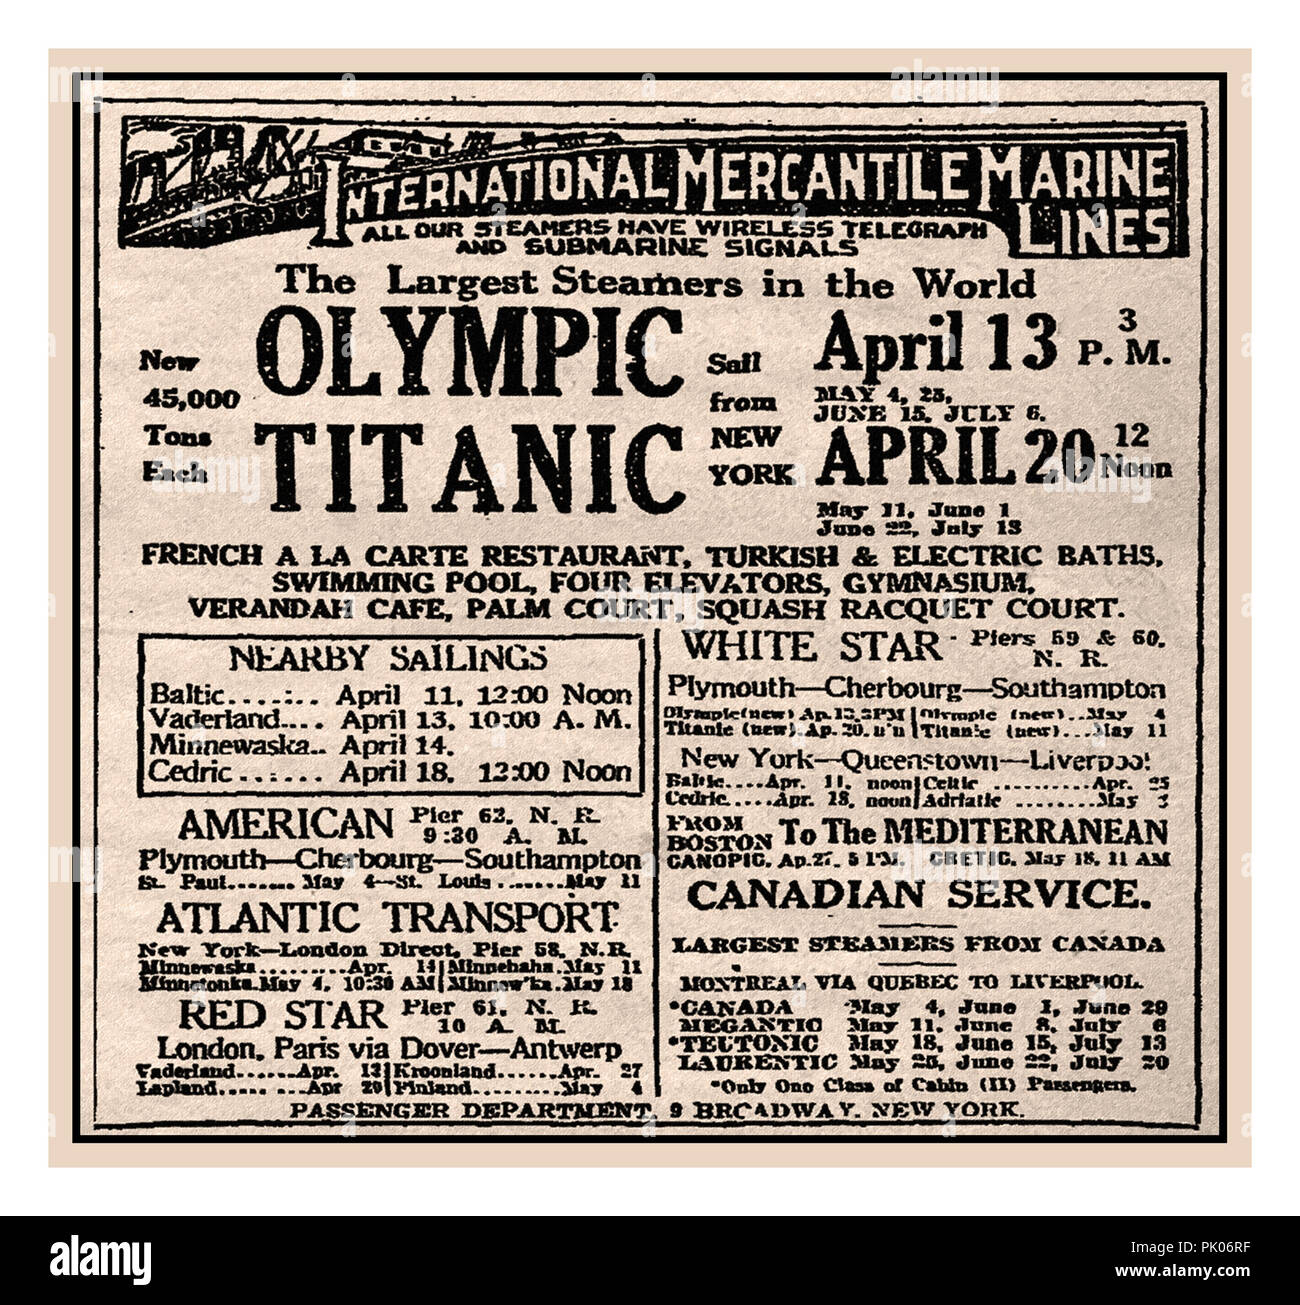 TITANIC 1912 RMS TITANIC Zeitungsanzeige in der New York Times für die erste Jungfernfahrt der Titanic, die am 20. April 1912 mittags von New York nach Europa abfährt, nach Osten. Diese planmäßige Segeltour fand leider nicht statt. Die Titanic wurde am 15. April 1912 auf tragische Weise verloren Stockfoto